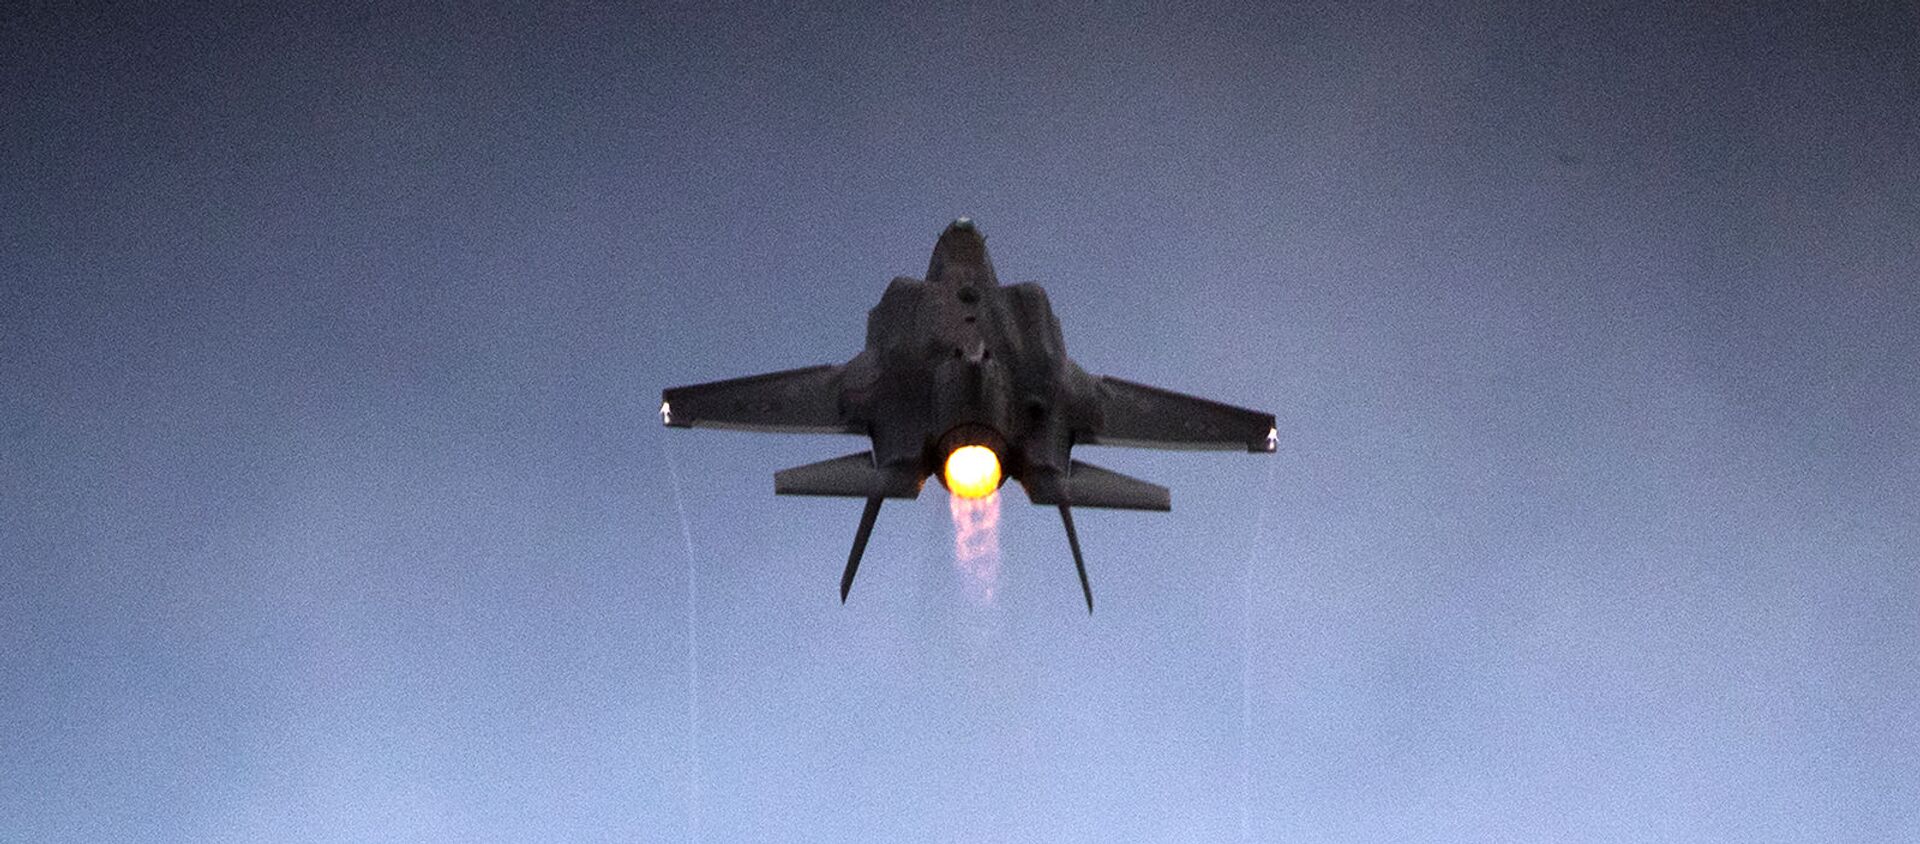 Истребитель F-35 Lightning II израильских ВВС на показательных выступлениях в военно-воздушной базе Хатцерим (27 декабря 2017). Пустыне Негев, Израиль - Sputnik Армения, 1920, 25.03.2021